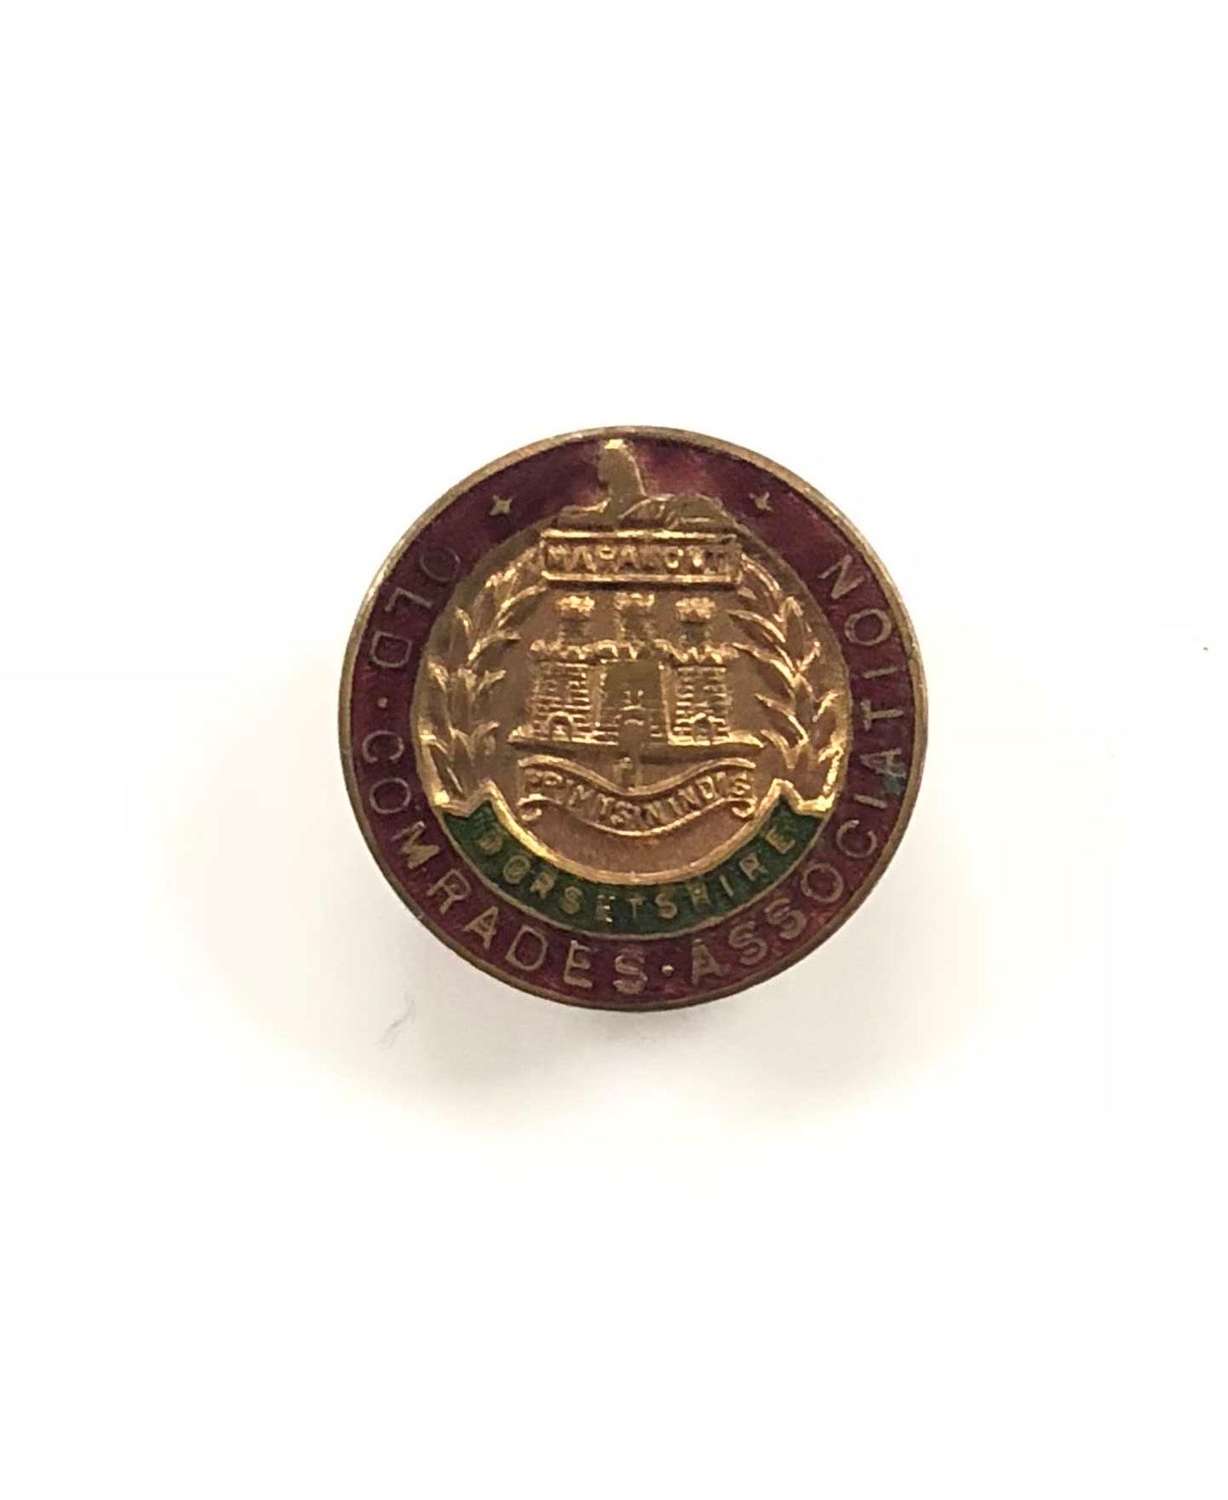 Dorset Regiment Old Comrade Association Lapel Badge.